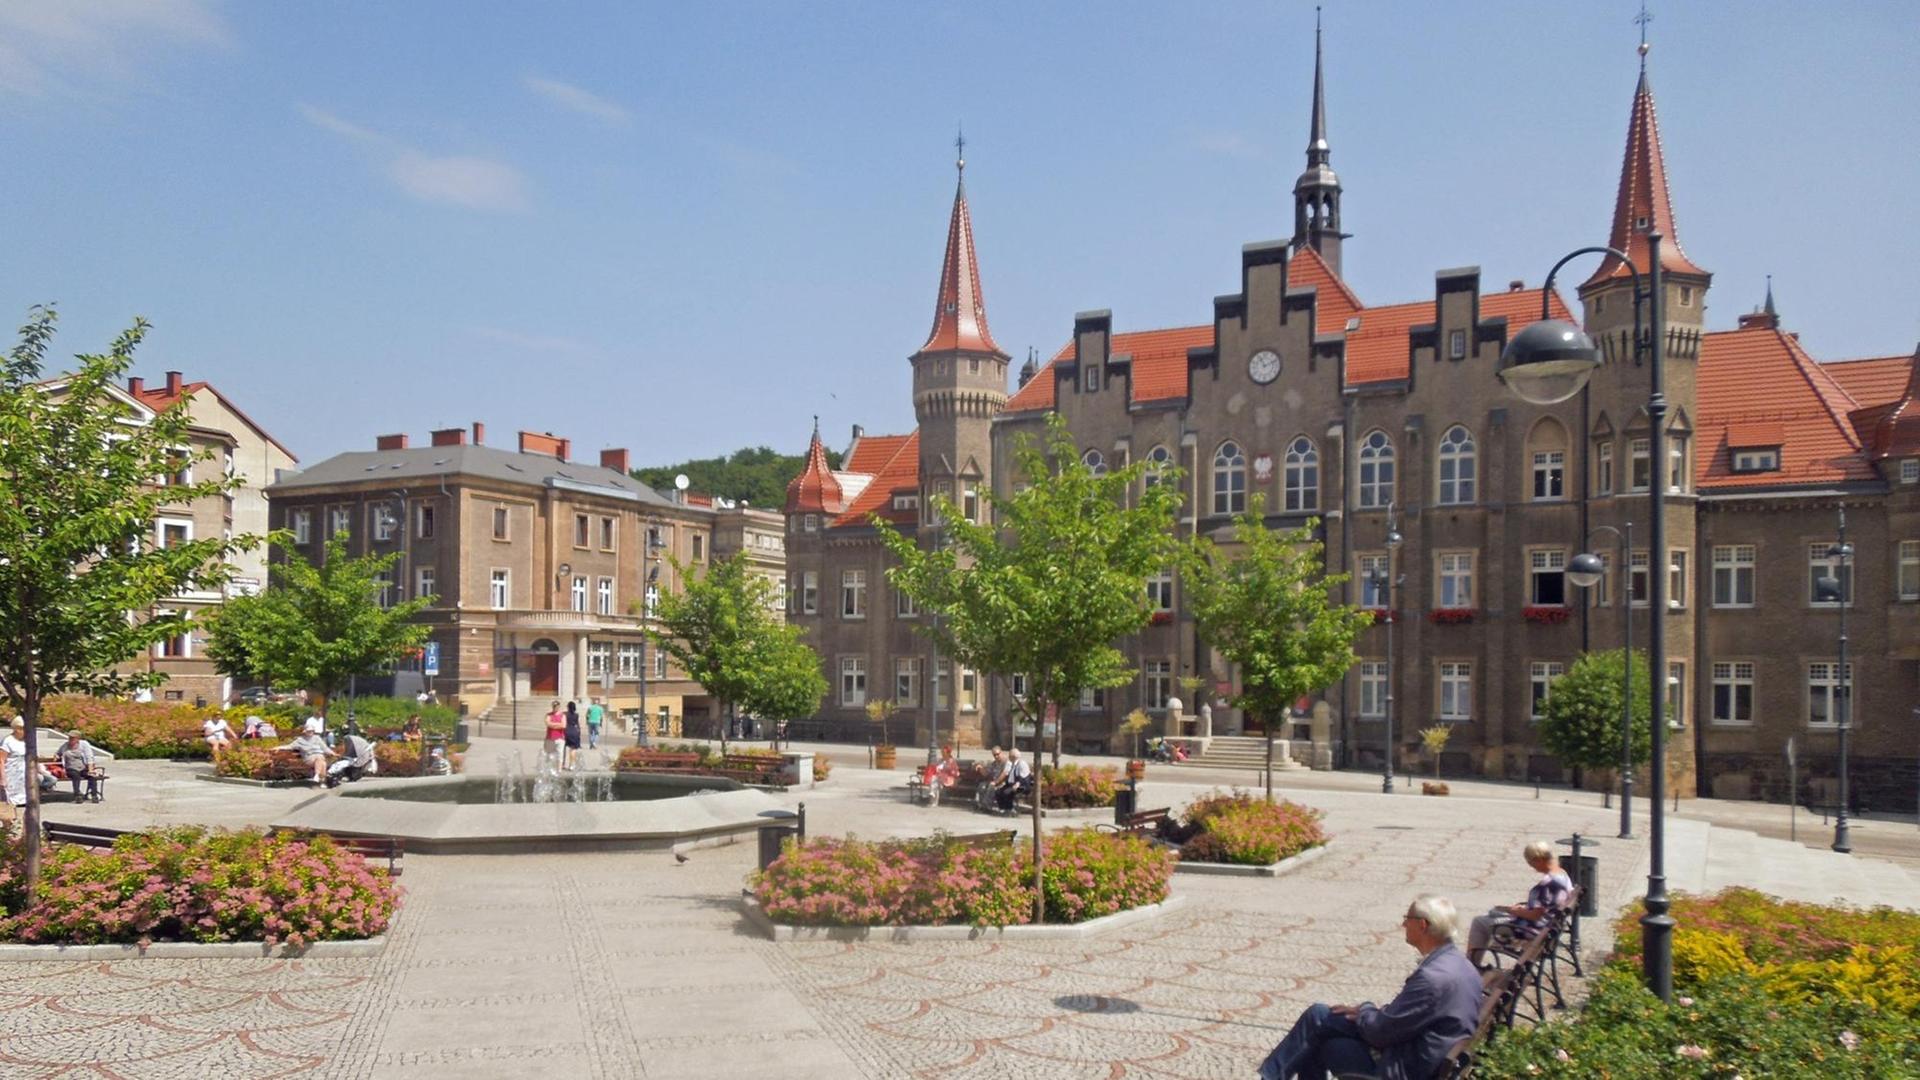 Der alte Rathausplatz mit Springbrunnen im polnischen Walbrzych (Waldenburg)